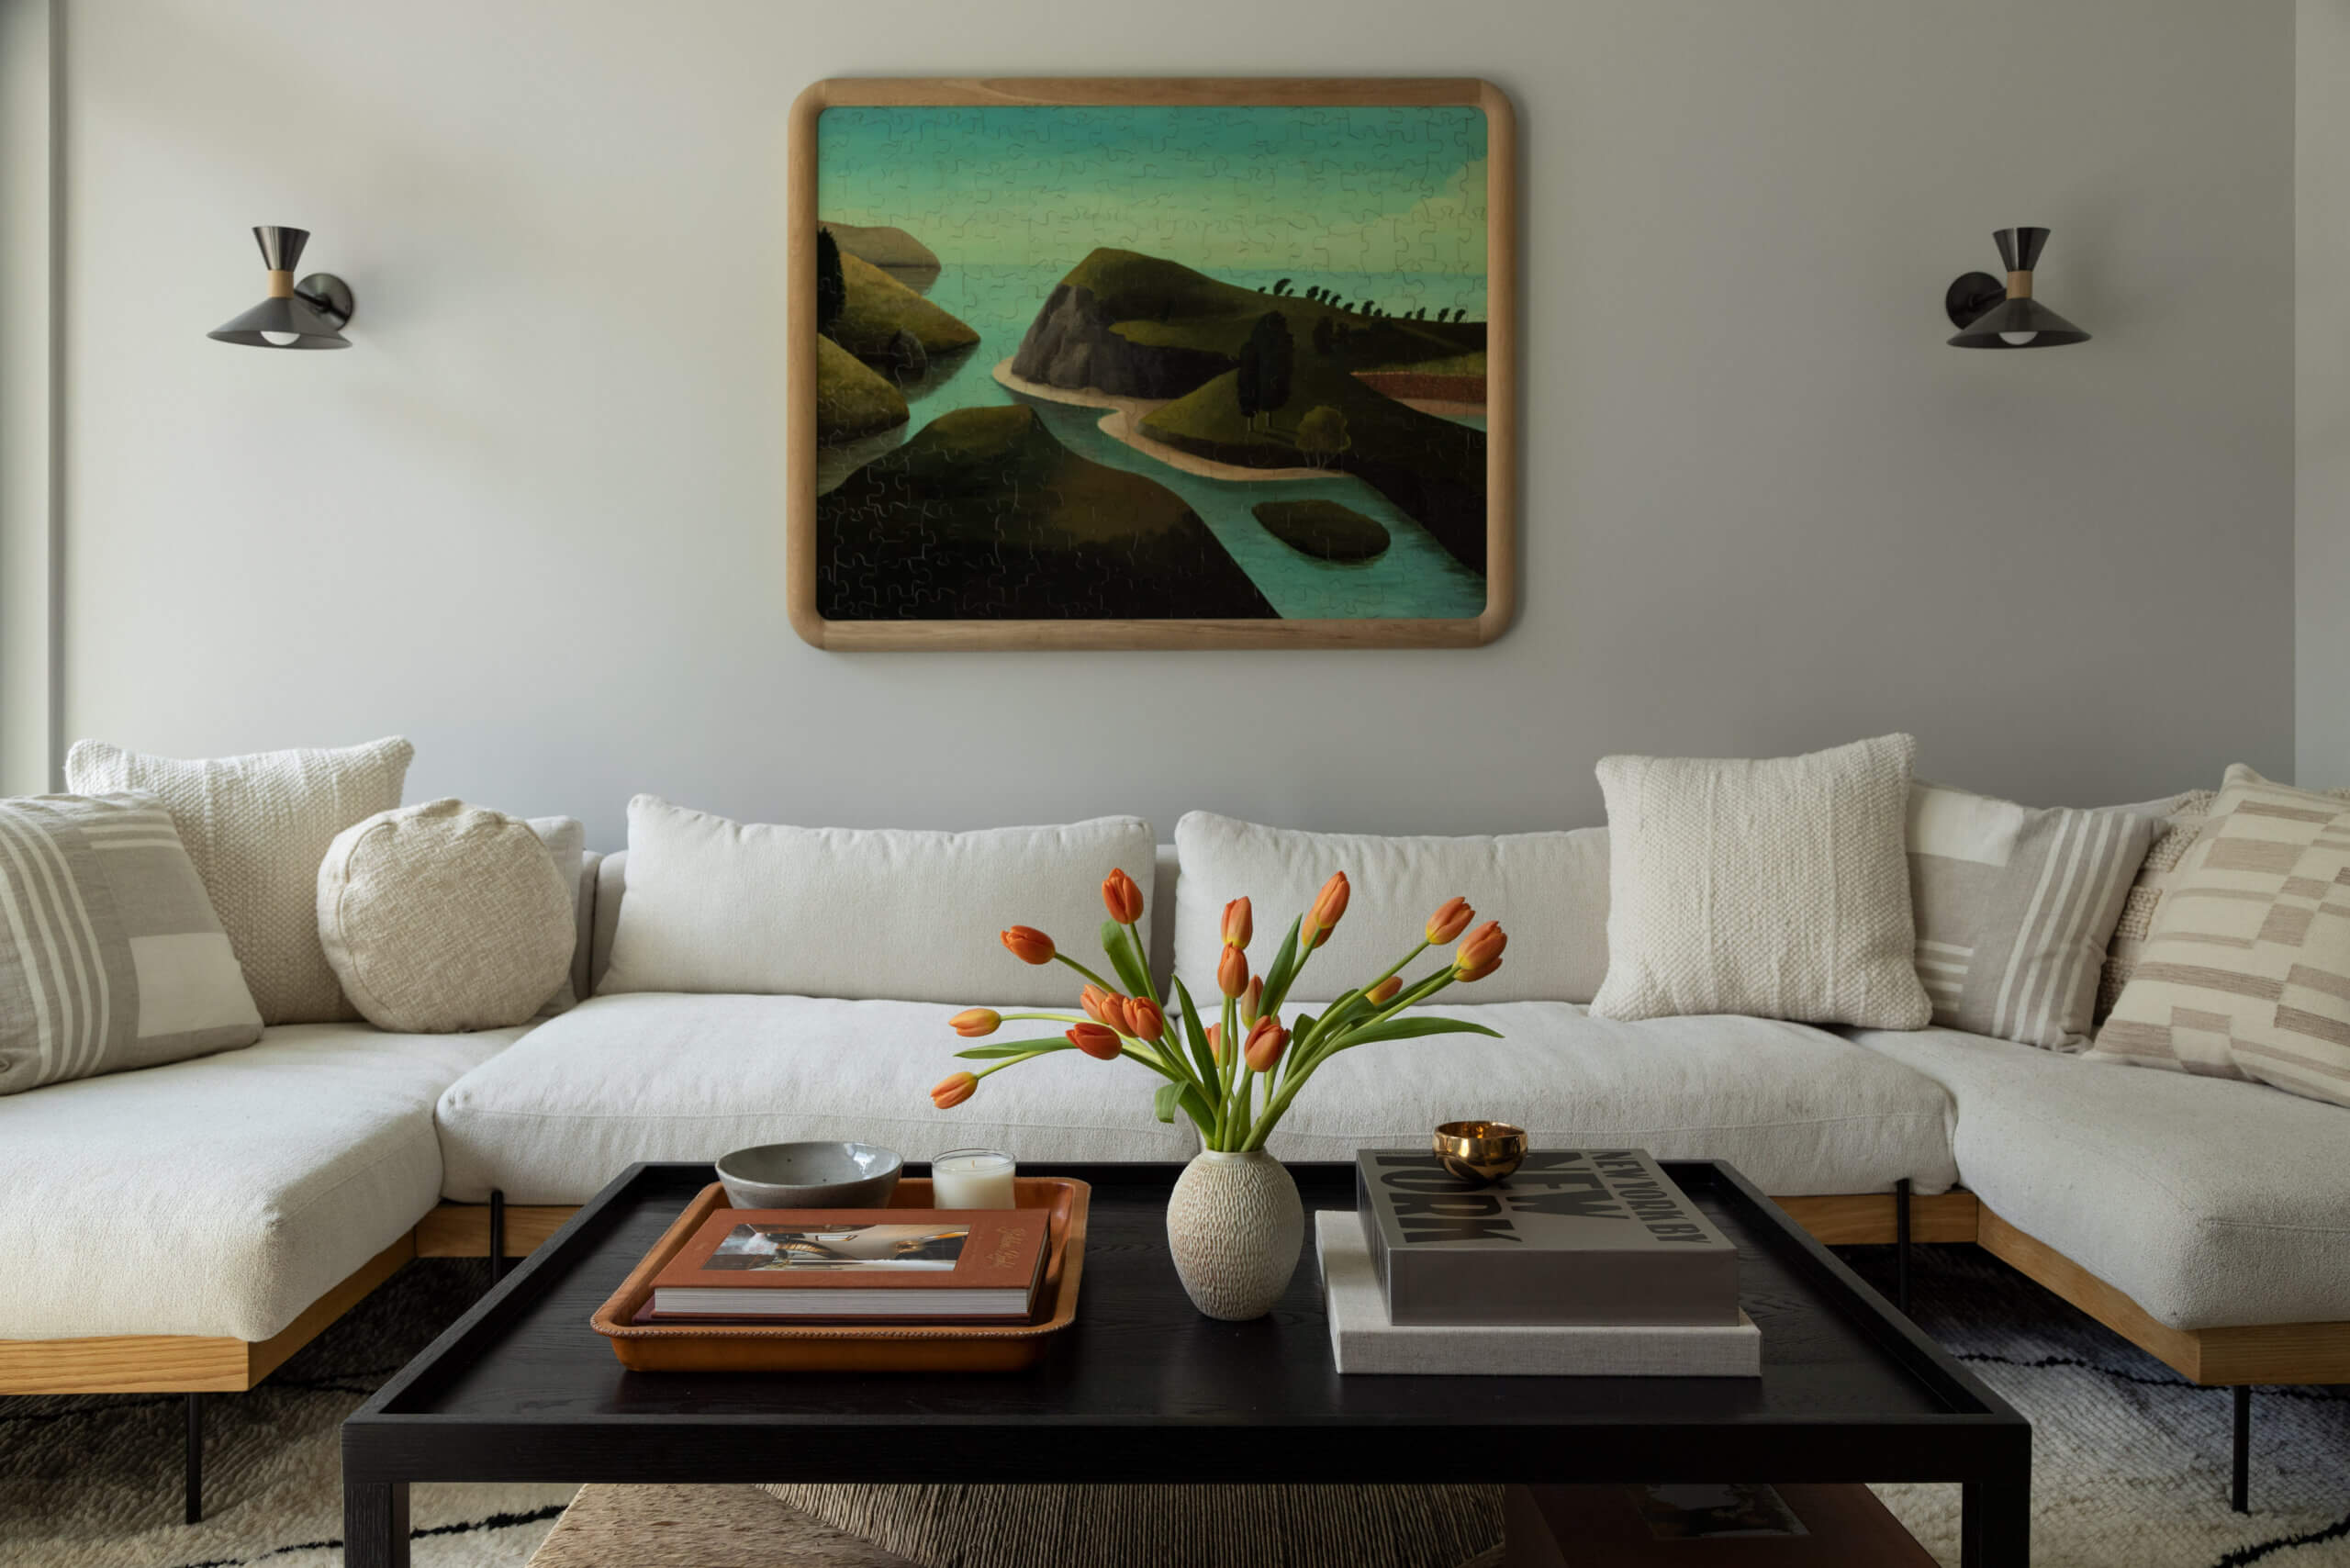 interior design ideas - a LIVING ROOM with white sofa